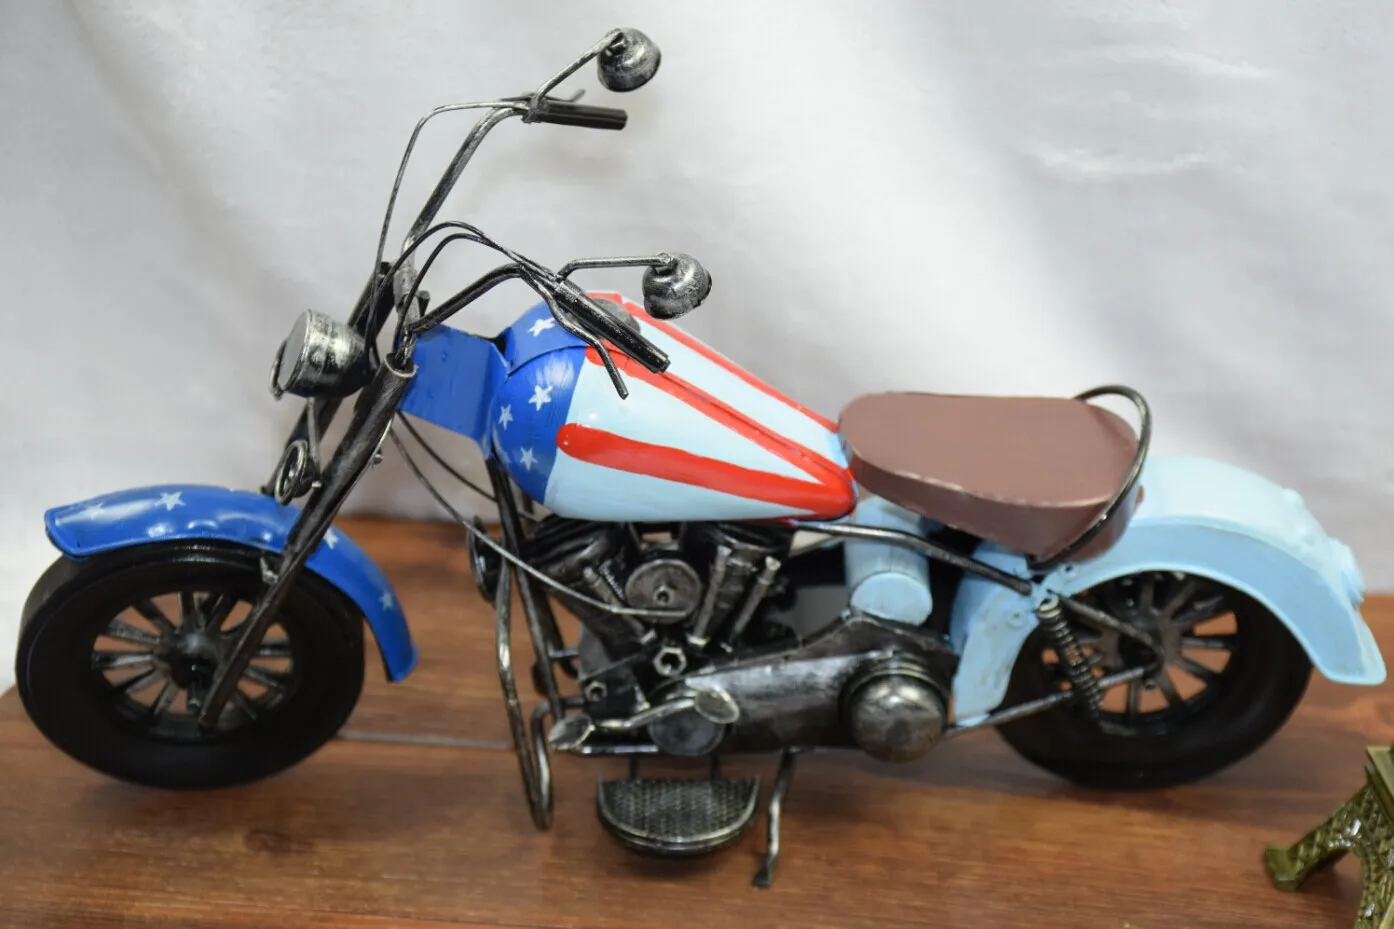 Retro blikken motorfiets diecast model auto speelgoed met Amerikaanse vlag, klassiek handgemaakt werk van kunsten, kind verjaardag partij jongen gift, verzamelen, decoratie